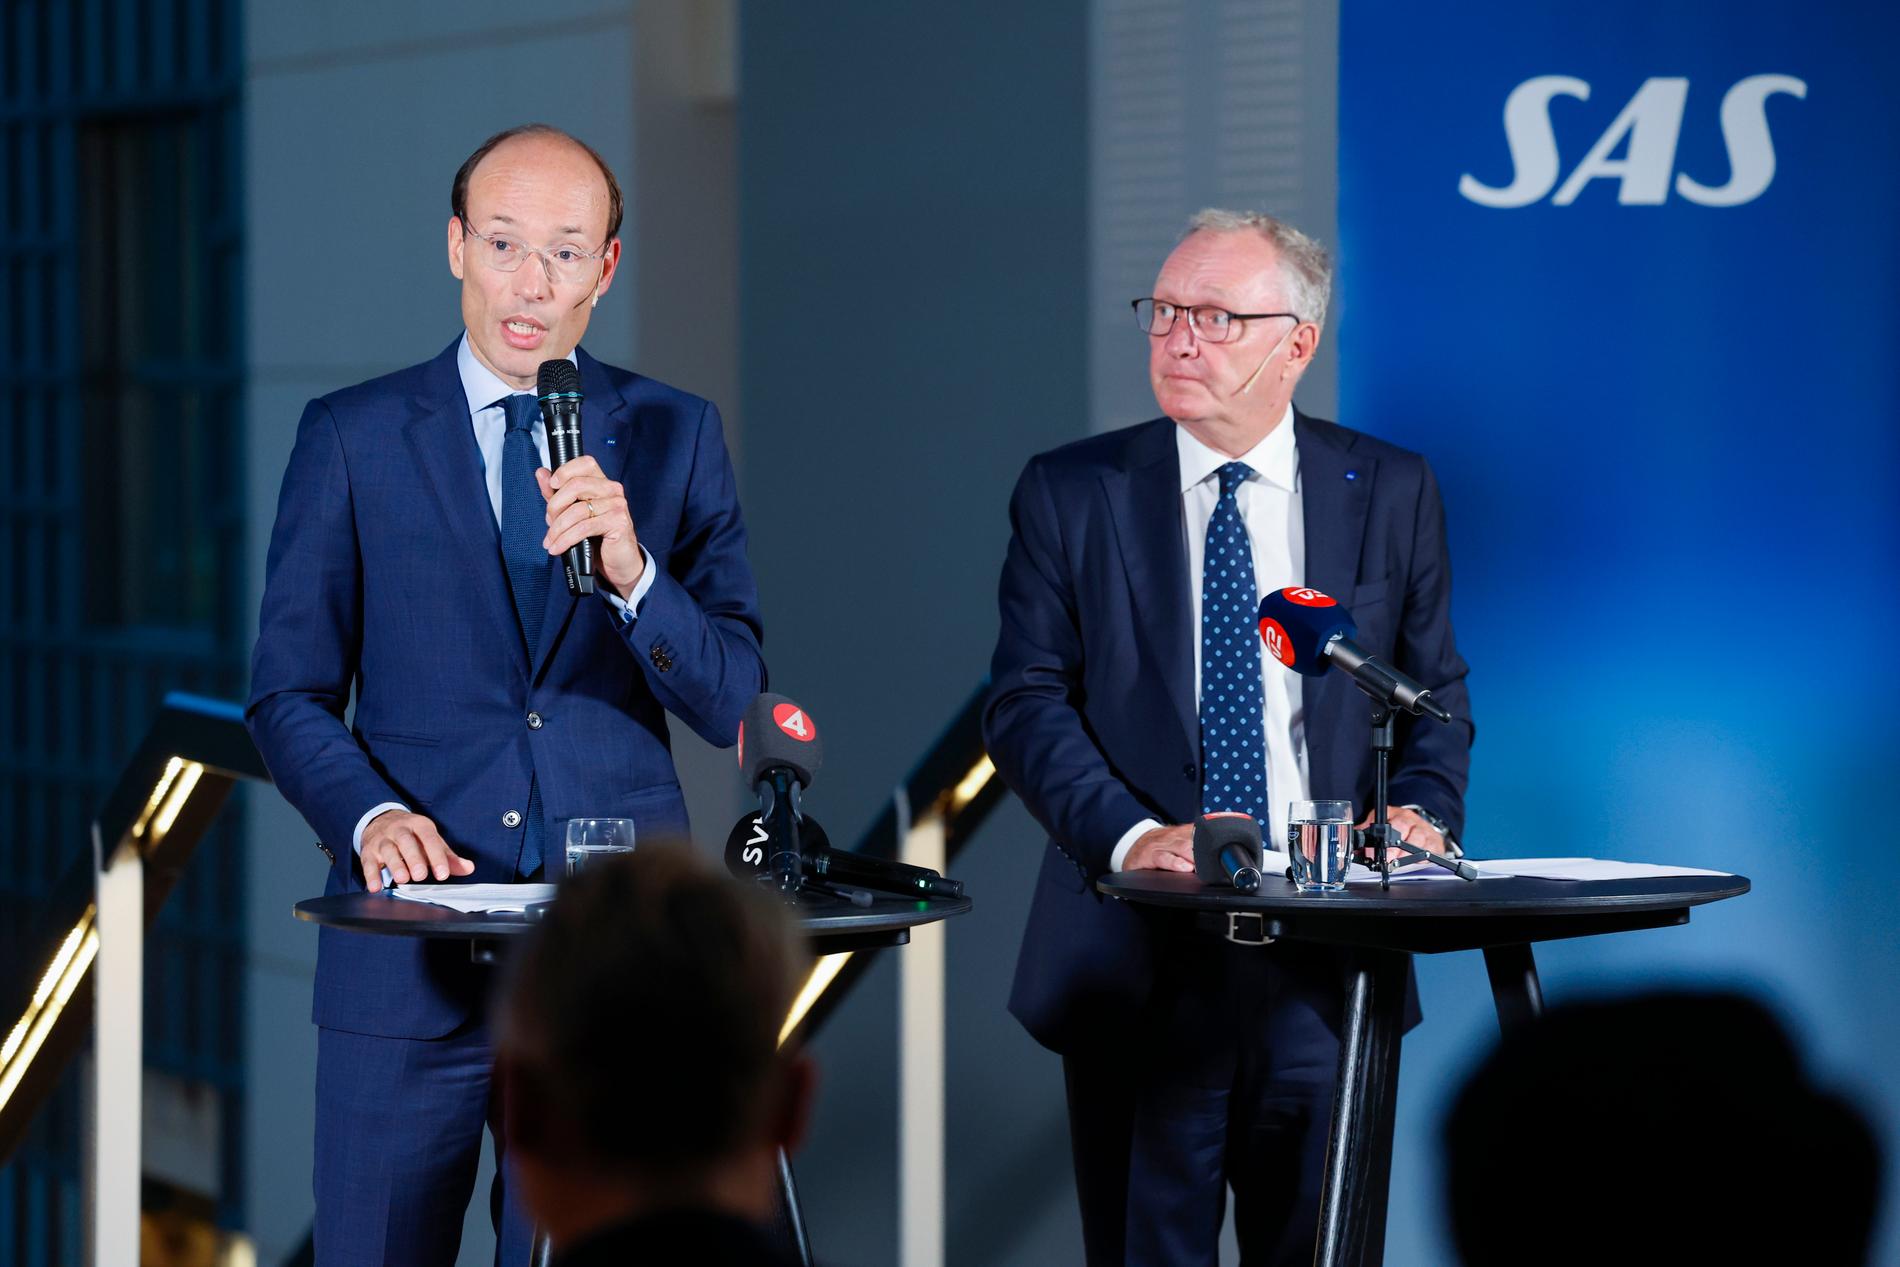 SAS VD och koncernchef Anko van der Werff och styrelseordförande Carsten Dilling under dagens pressträff på SAS huvudkontor i Solna, där de nya storägarna presenterades.